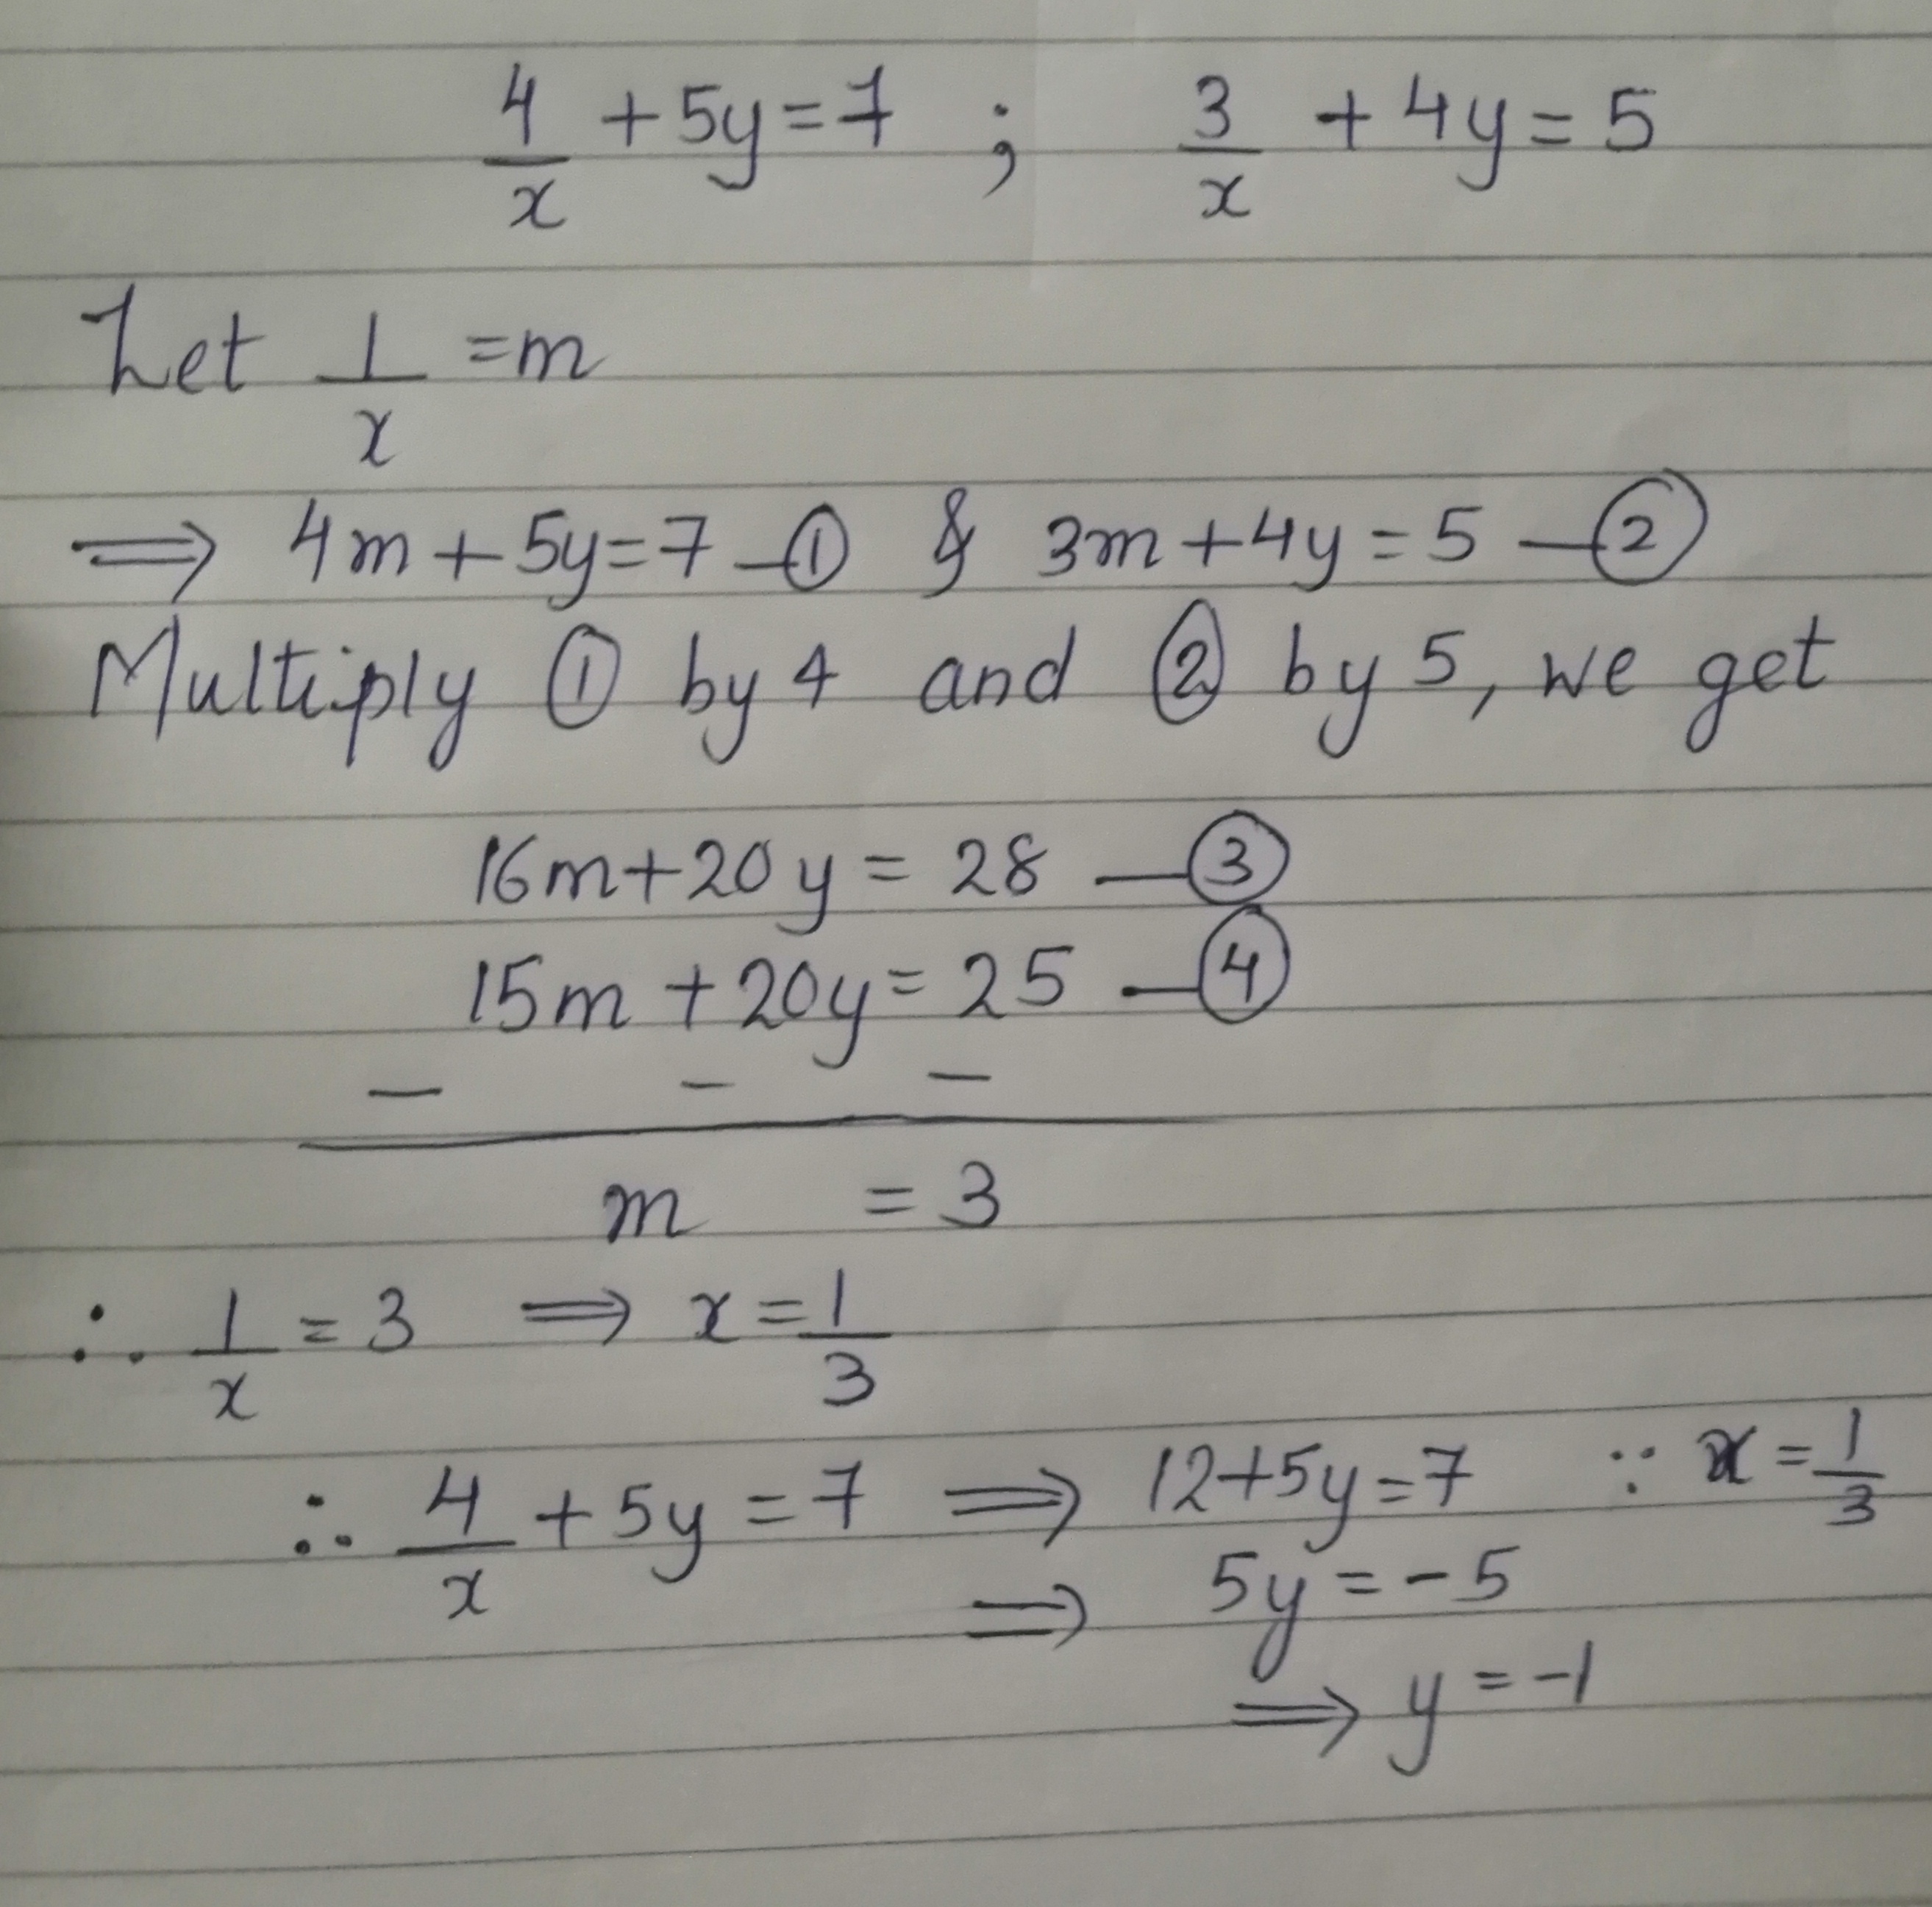 4 X 5y 7 3 X 4y 5 Maths Topperlearning Com Eyz2xh55